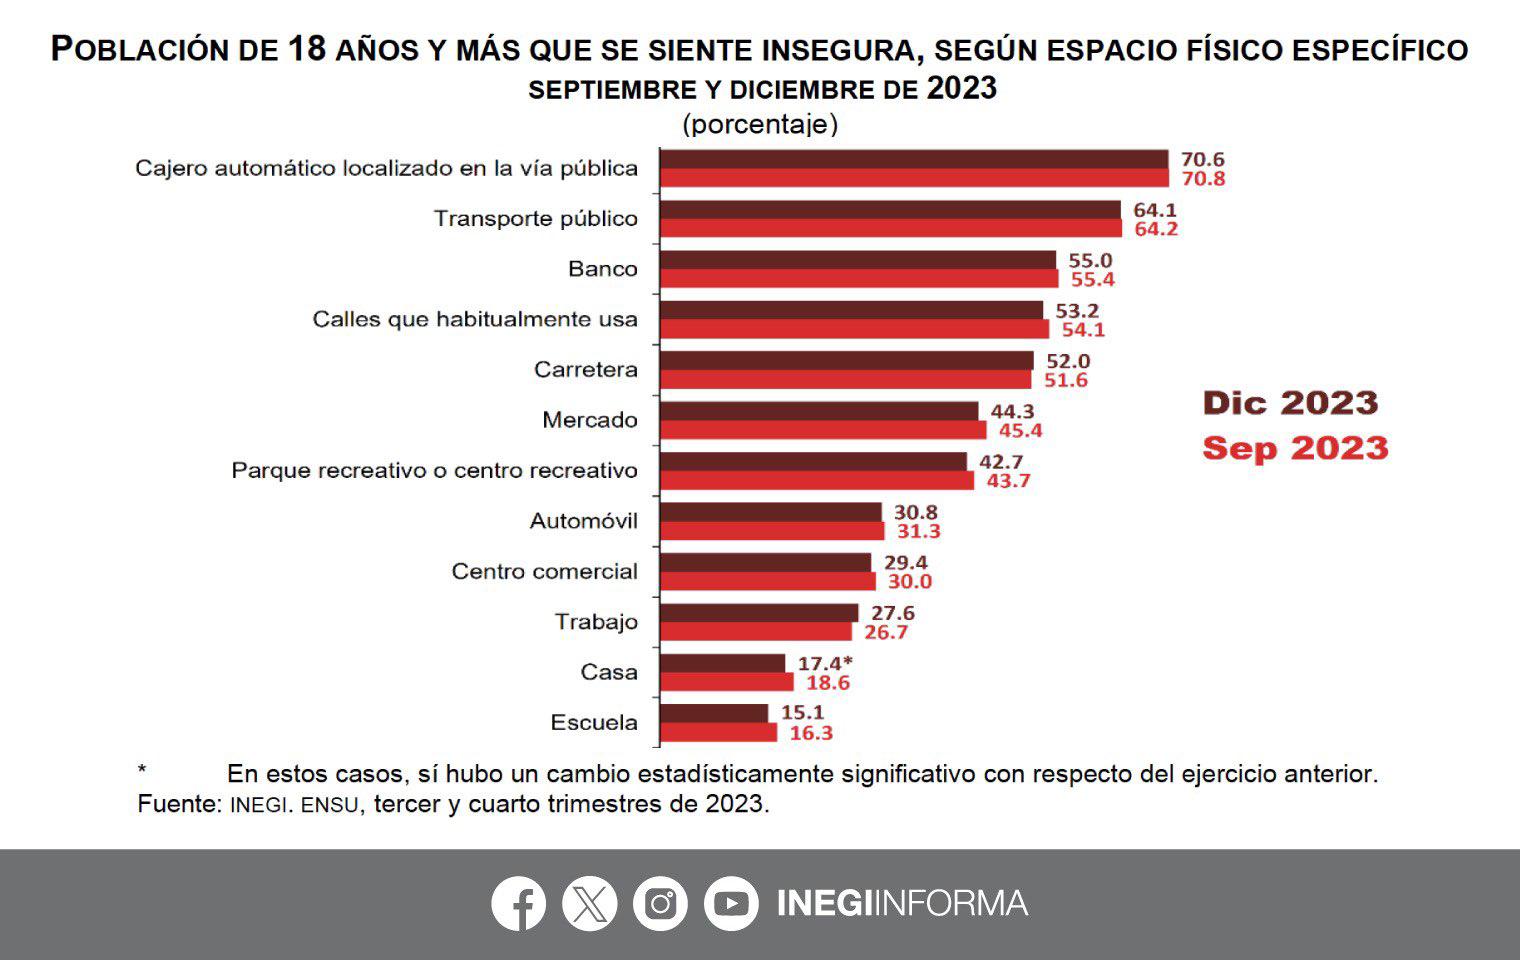 $!El 59.1% de los mexicanos considera inseguro vivir en su ciudad, según encuesta INEGI